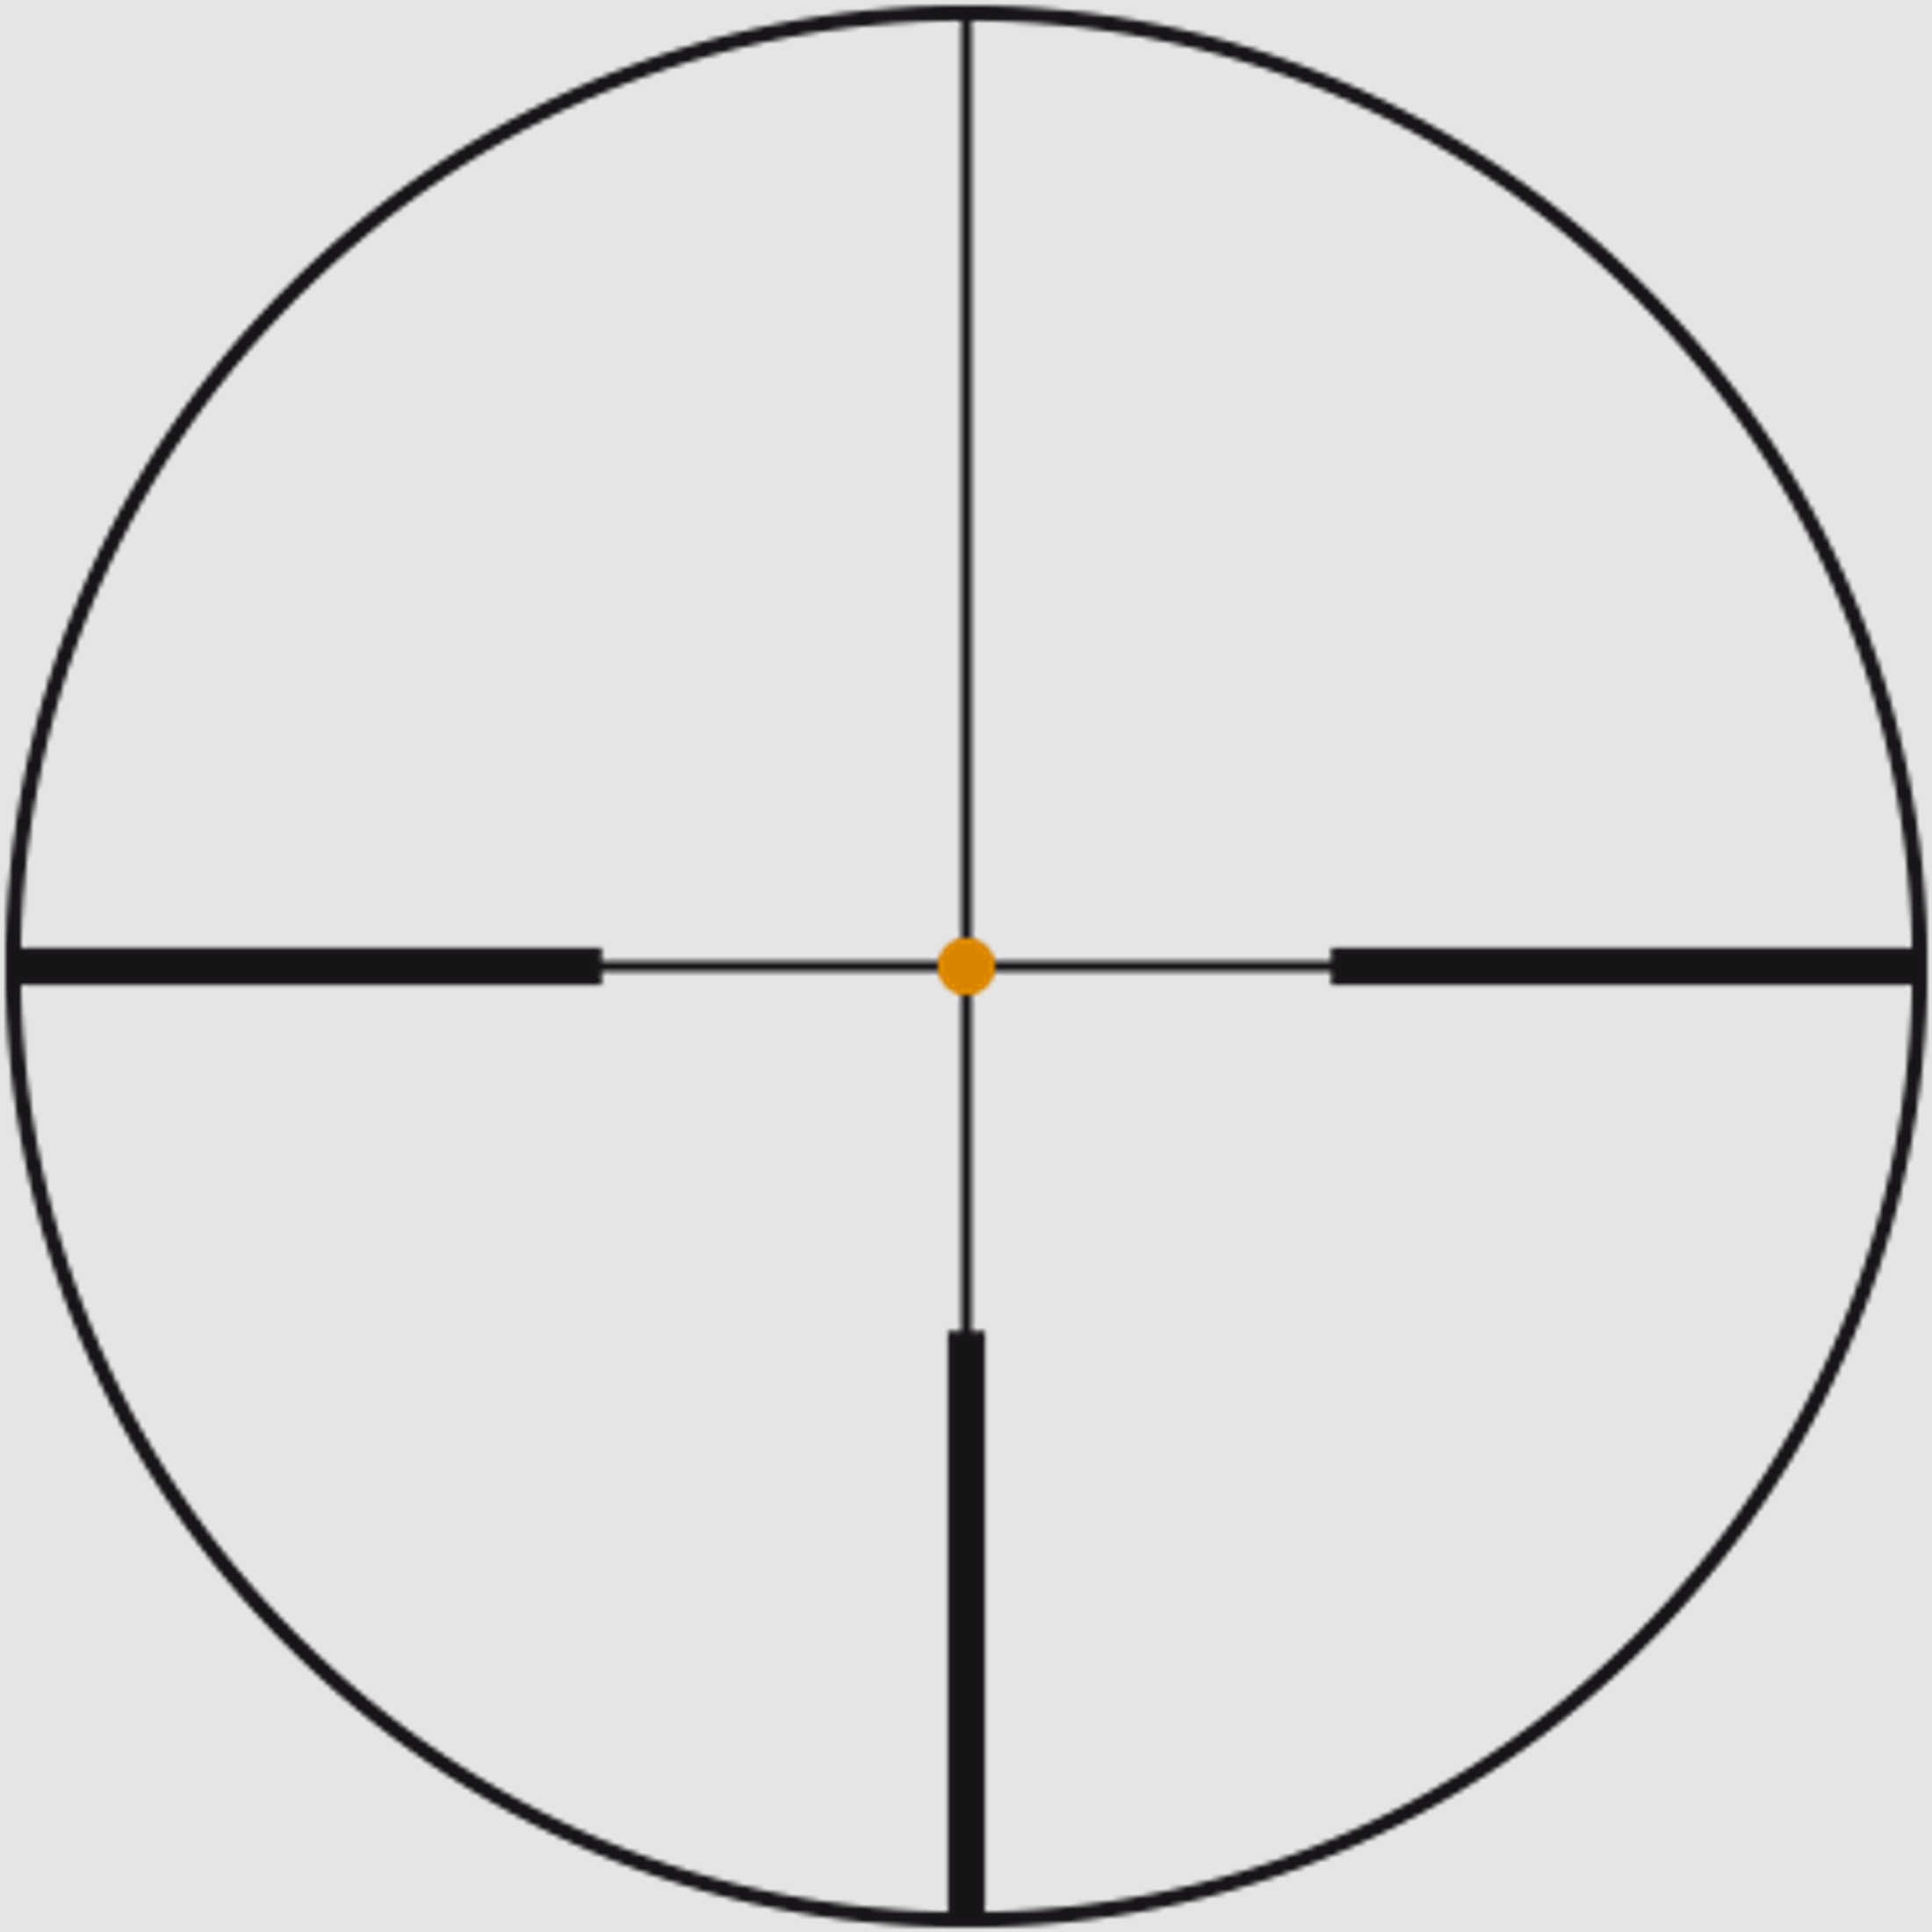 SWAROVSKI Zielfernrohr mit Leuchtabsehen 1,7-10x42 Z6i L (30mm) II Abs. 4AI/CDI